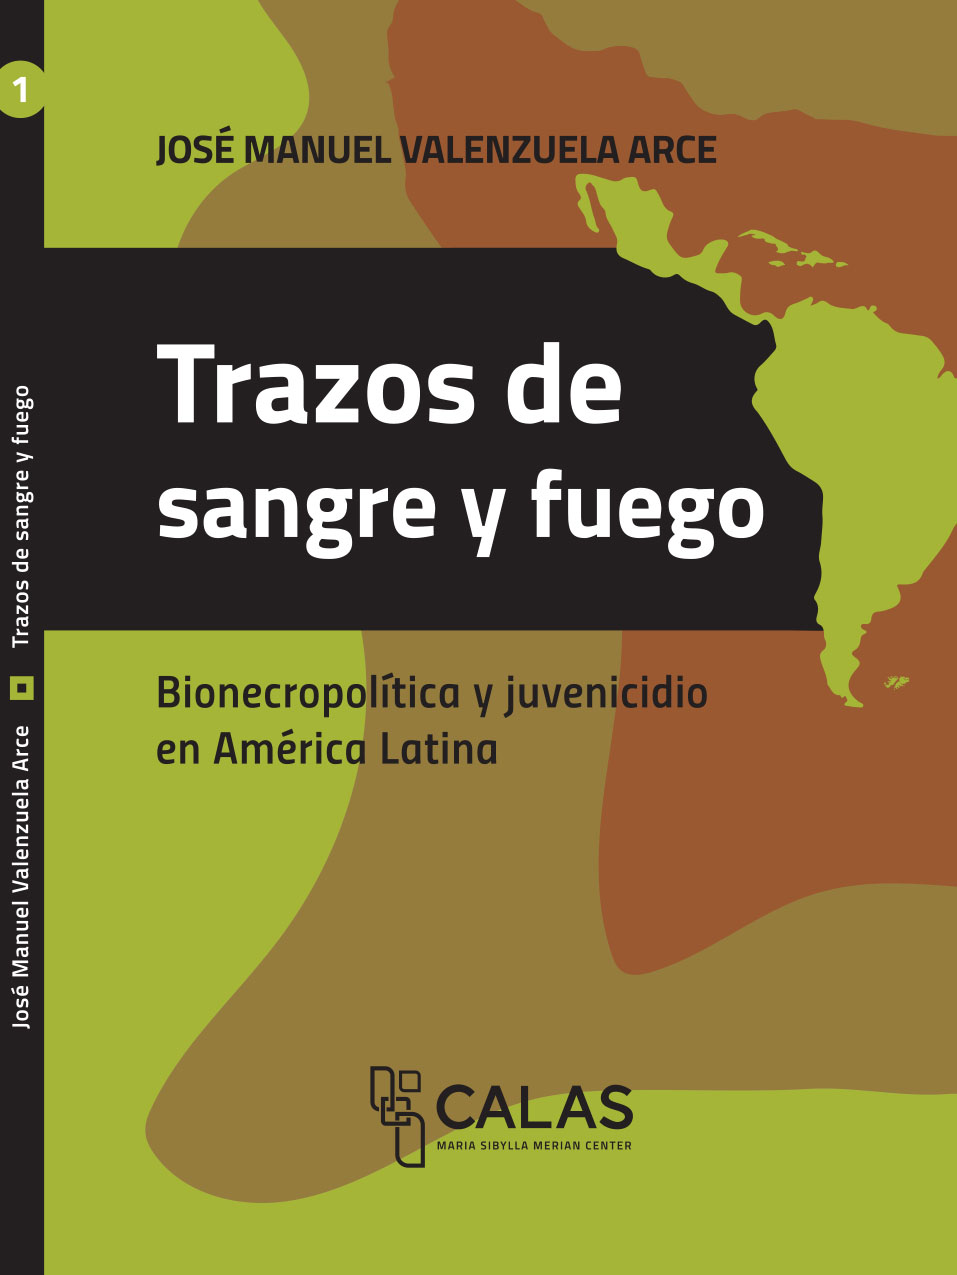 Trazos de sangre y fuego: bionecropolítica y juvenicidio en América Latina